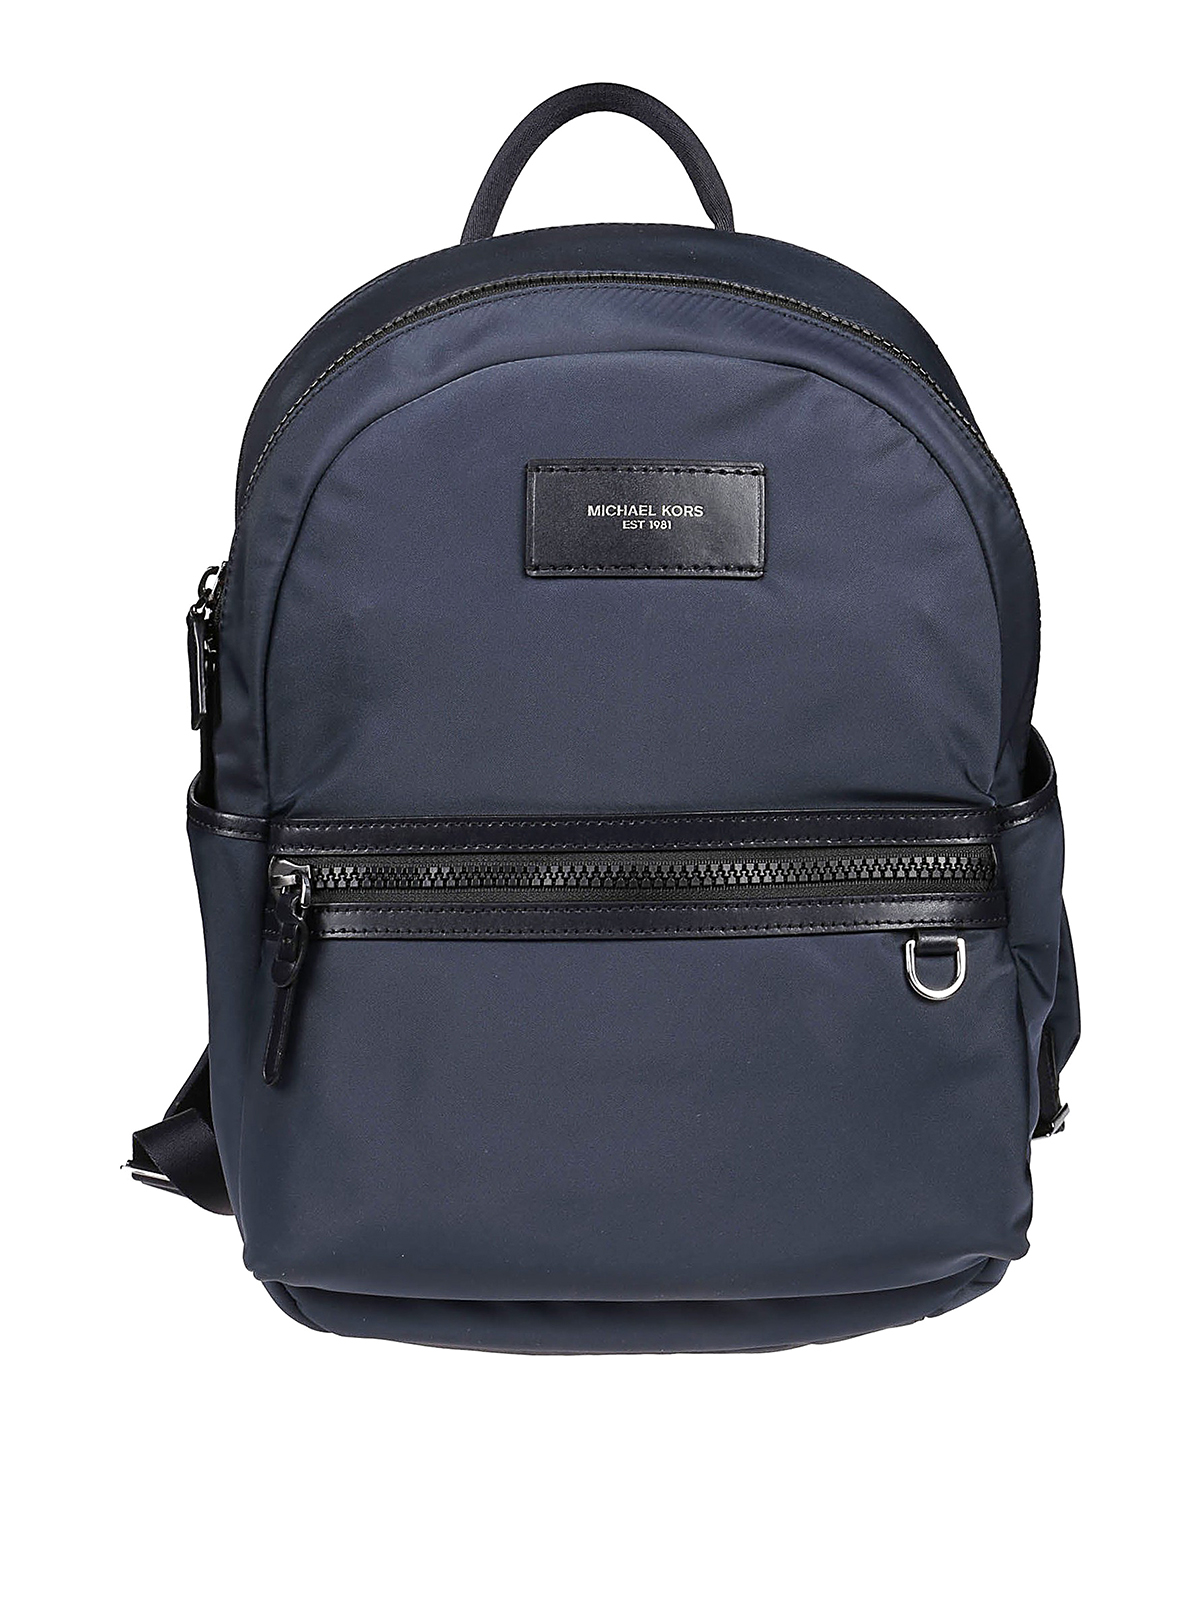 Backpacks Michael Kors - Brooklyn nylon backpack - 33F9LBNB2U406